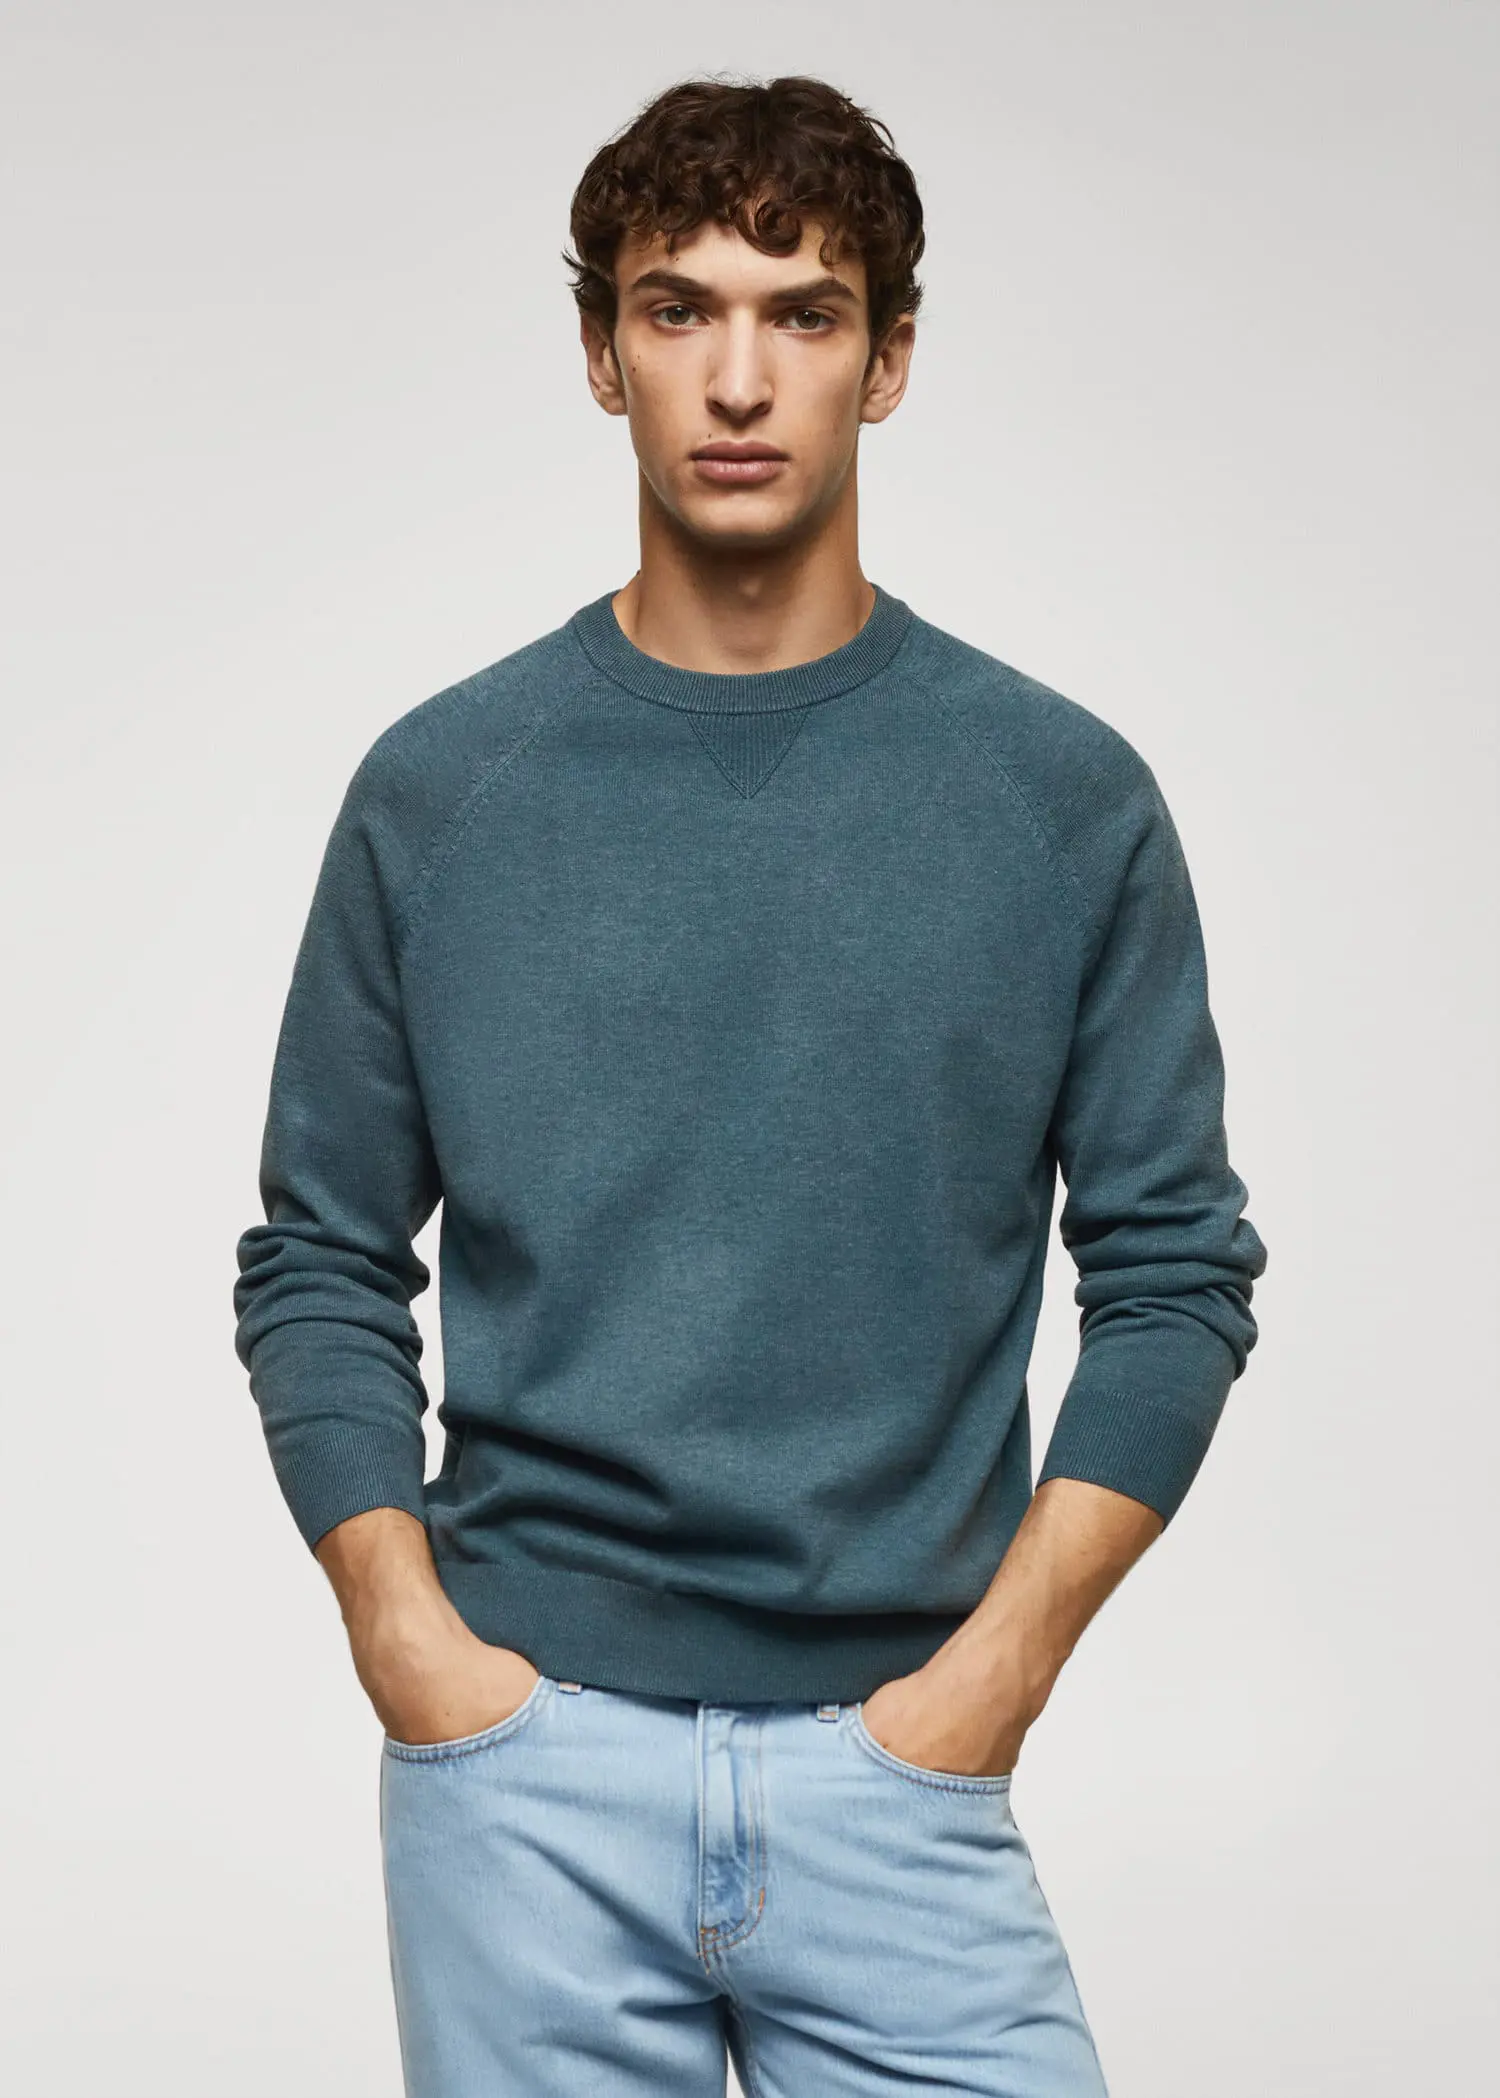 Mango Fine-knit cotton sweater. 1